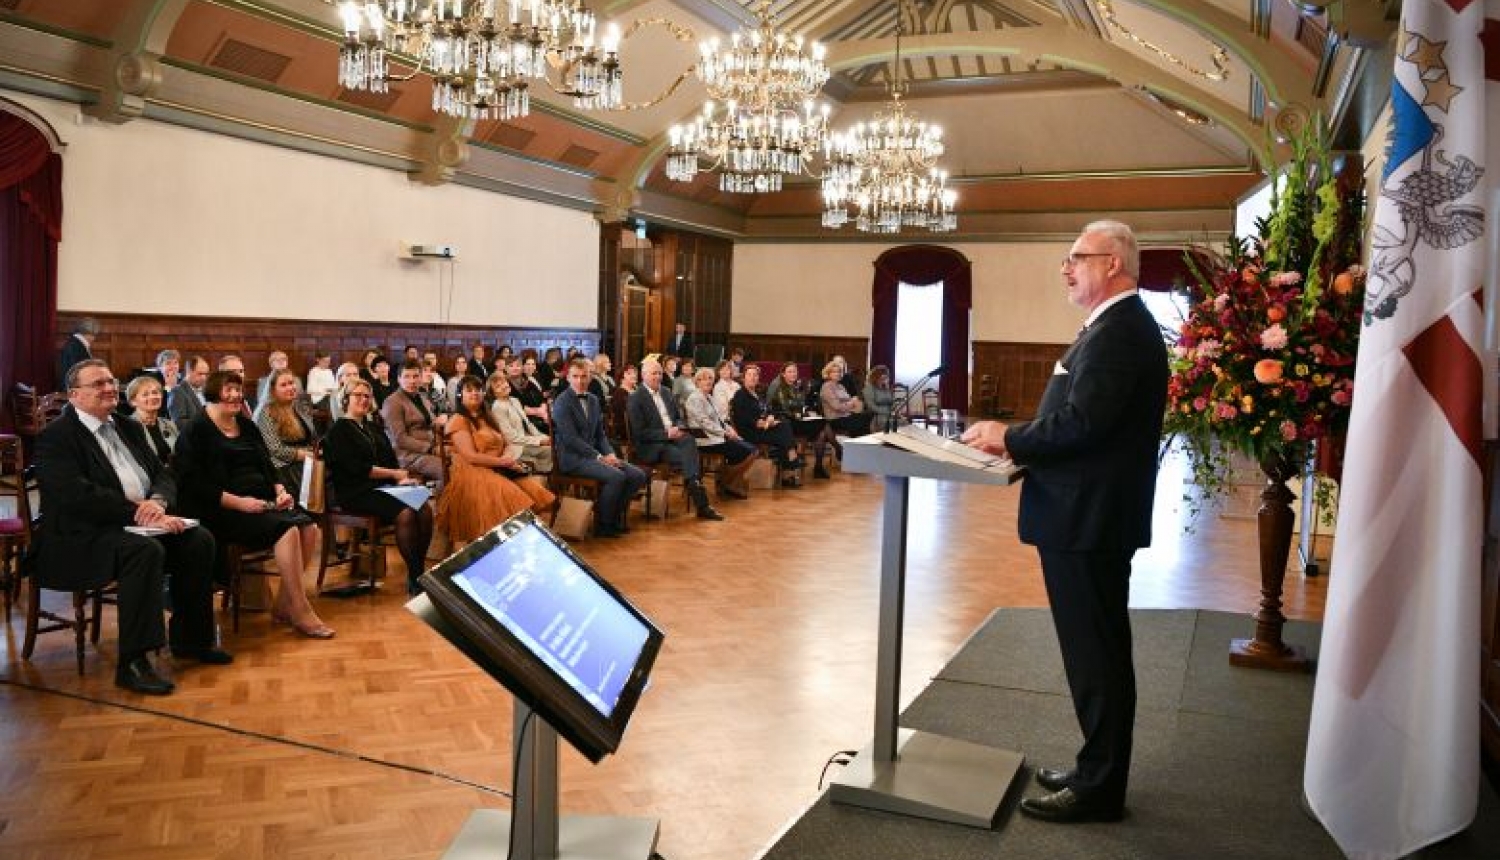 Valsts prezidenta Egila Levita runa, atklājot Latvijas Nacionālā vēstures muzeja starptautisko konferenci “Ar skatu rītdienā. Nacionālo muzeju misija un nākotnes izaicinājumi Baltijas jūras reģionā”